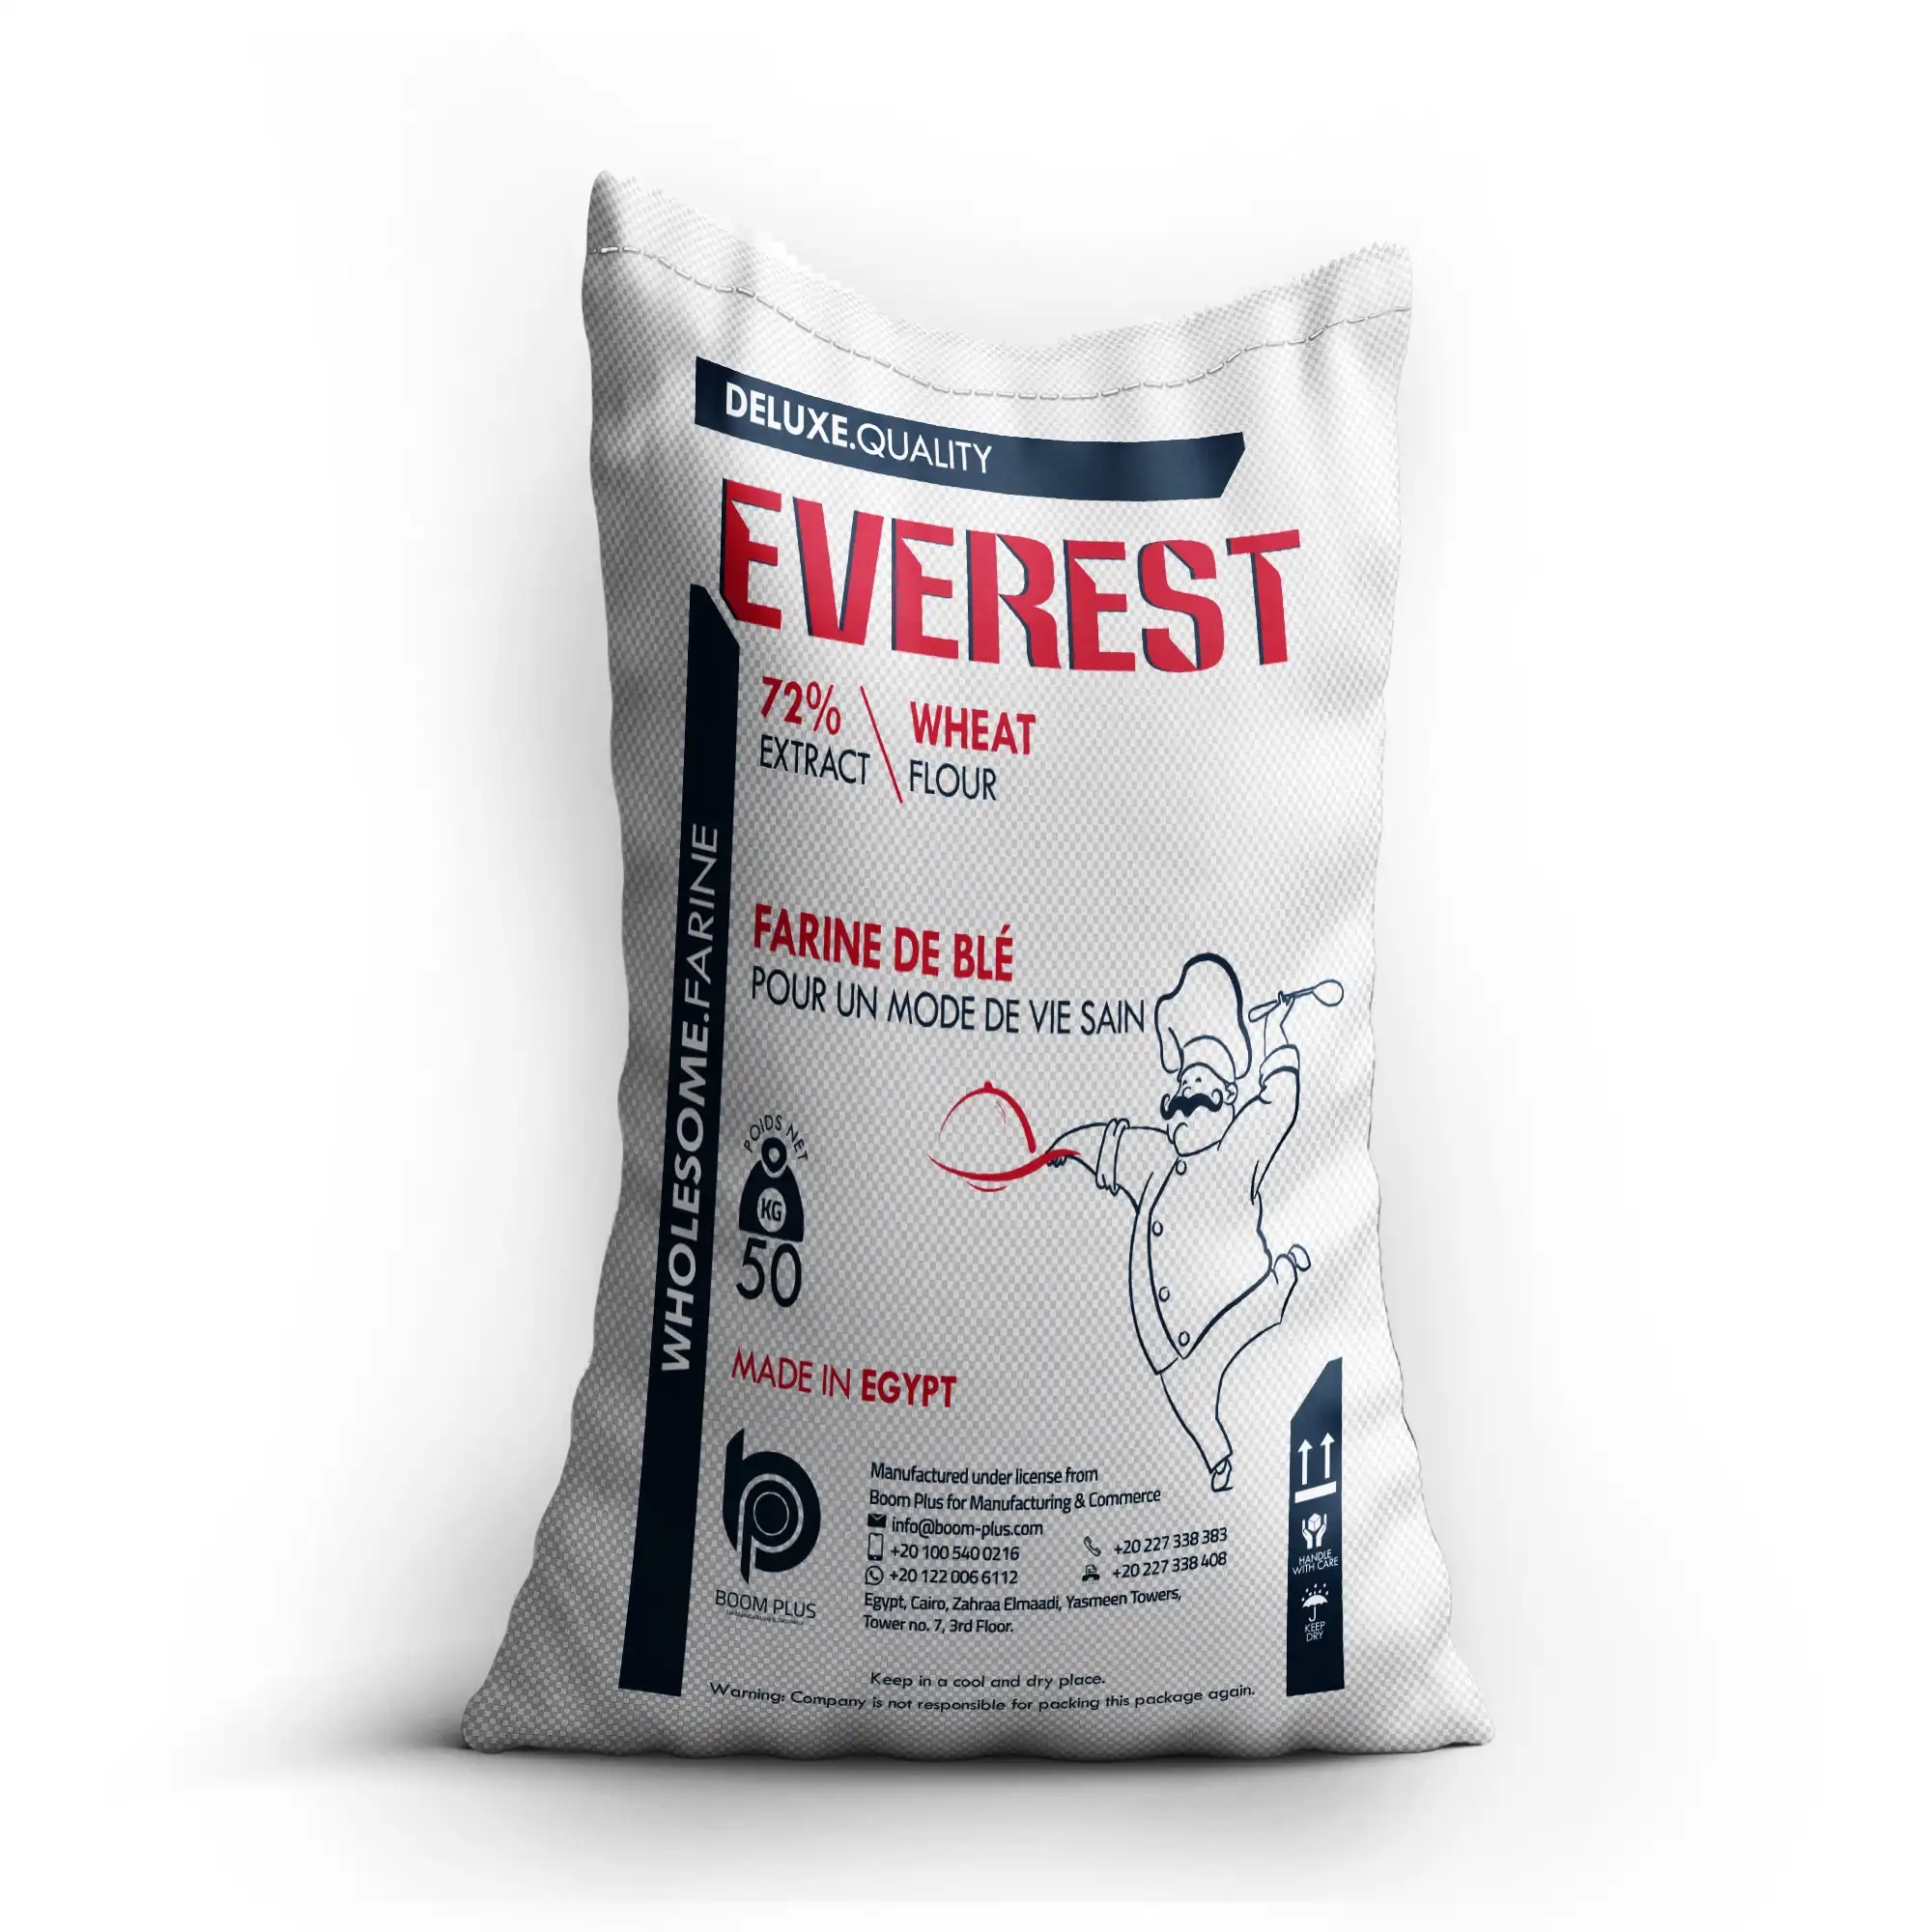 Everest — pain de farine de blé, 50 kg, qualité supérieure